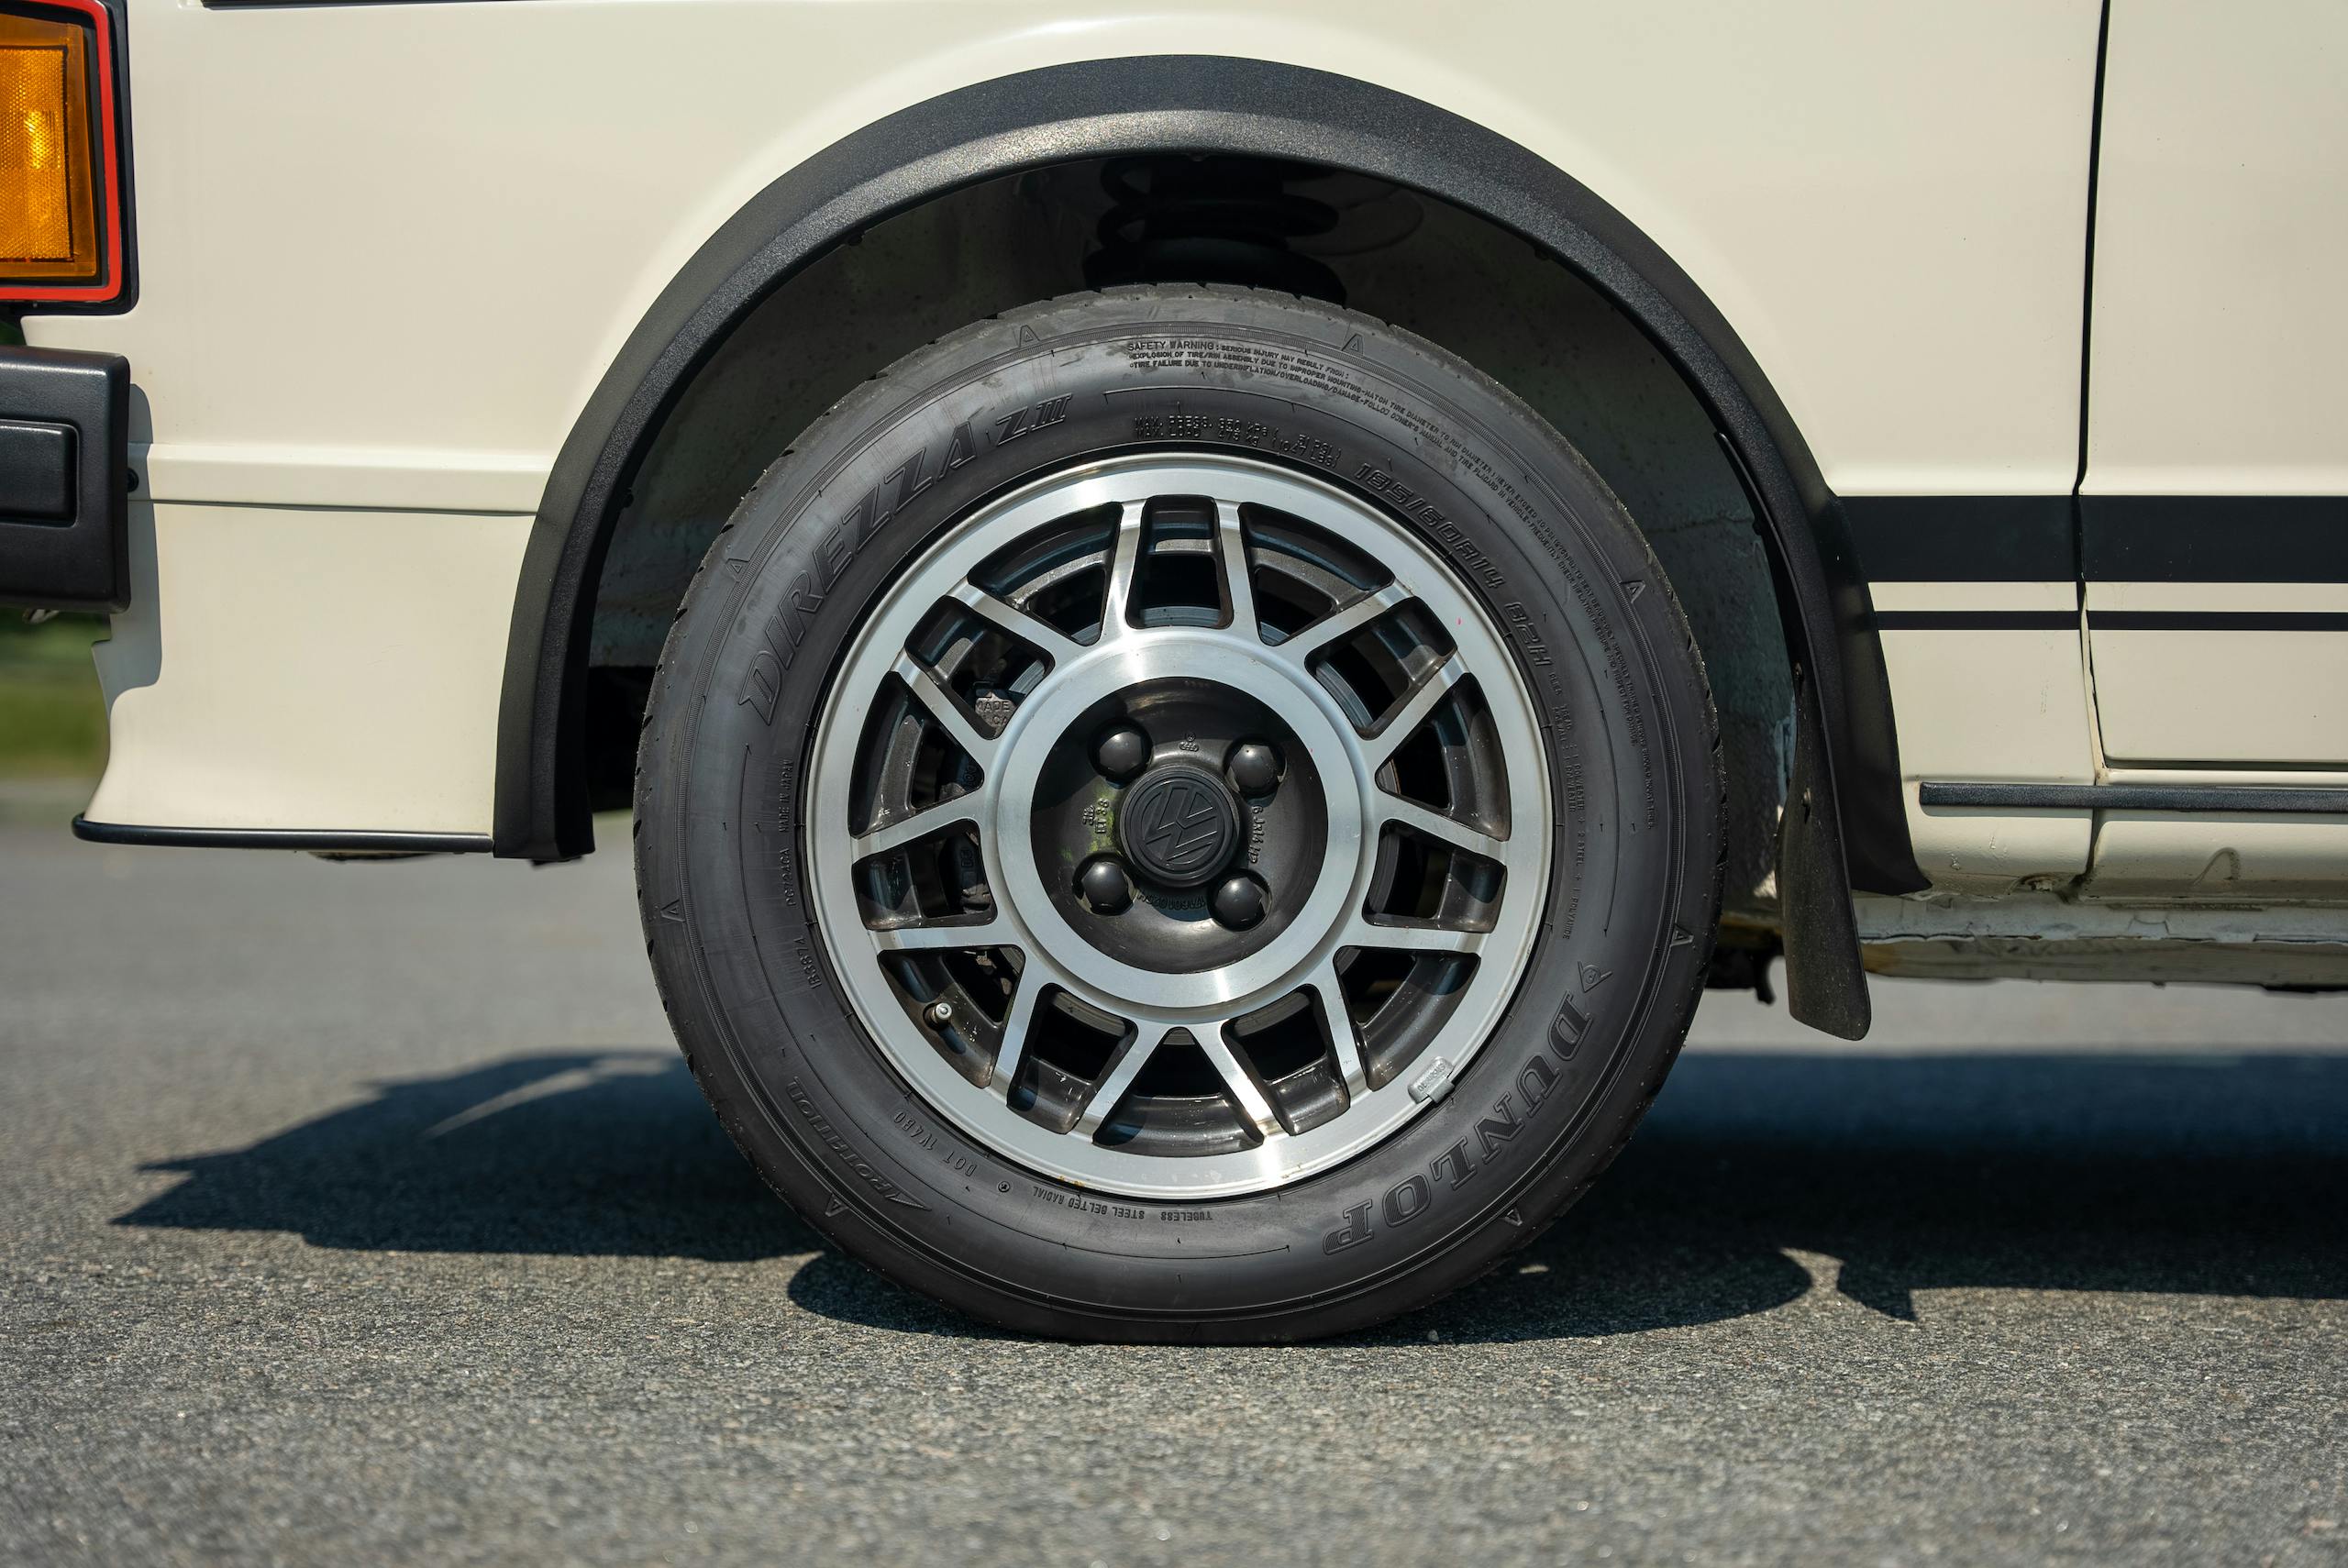 1983 Volkswagen Rabbit GTI Callaway hot hatch wheel tire